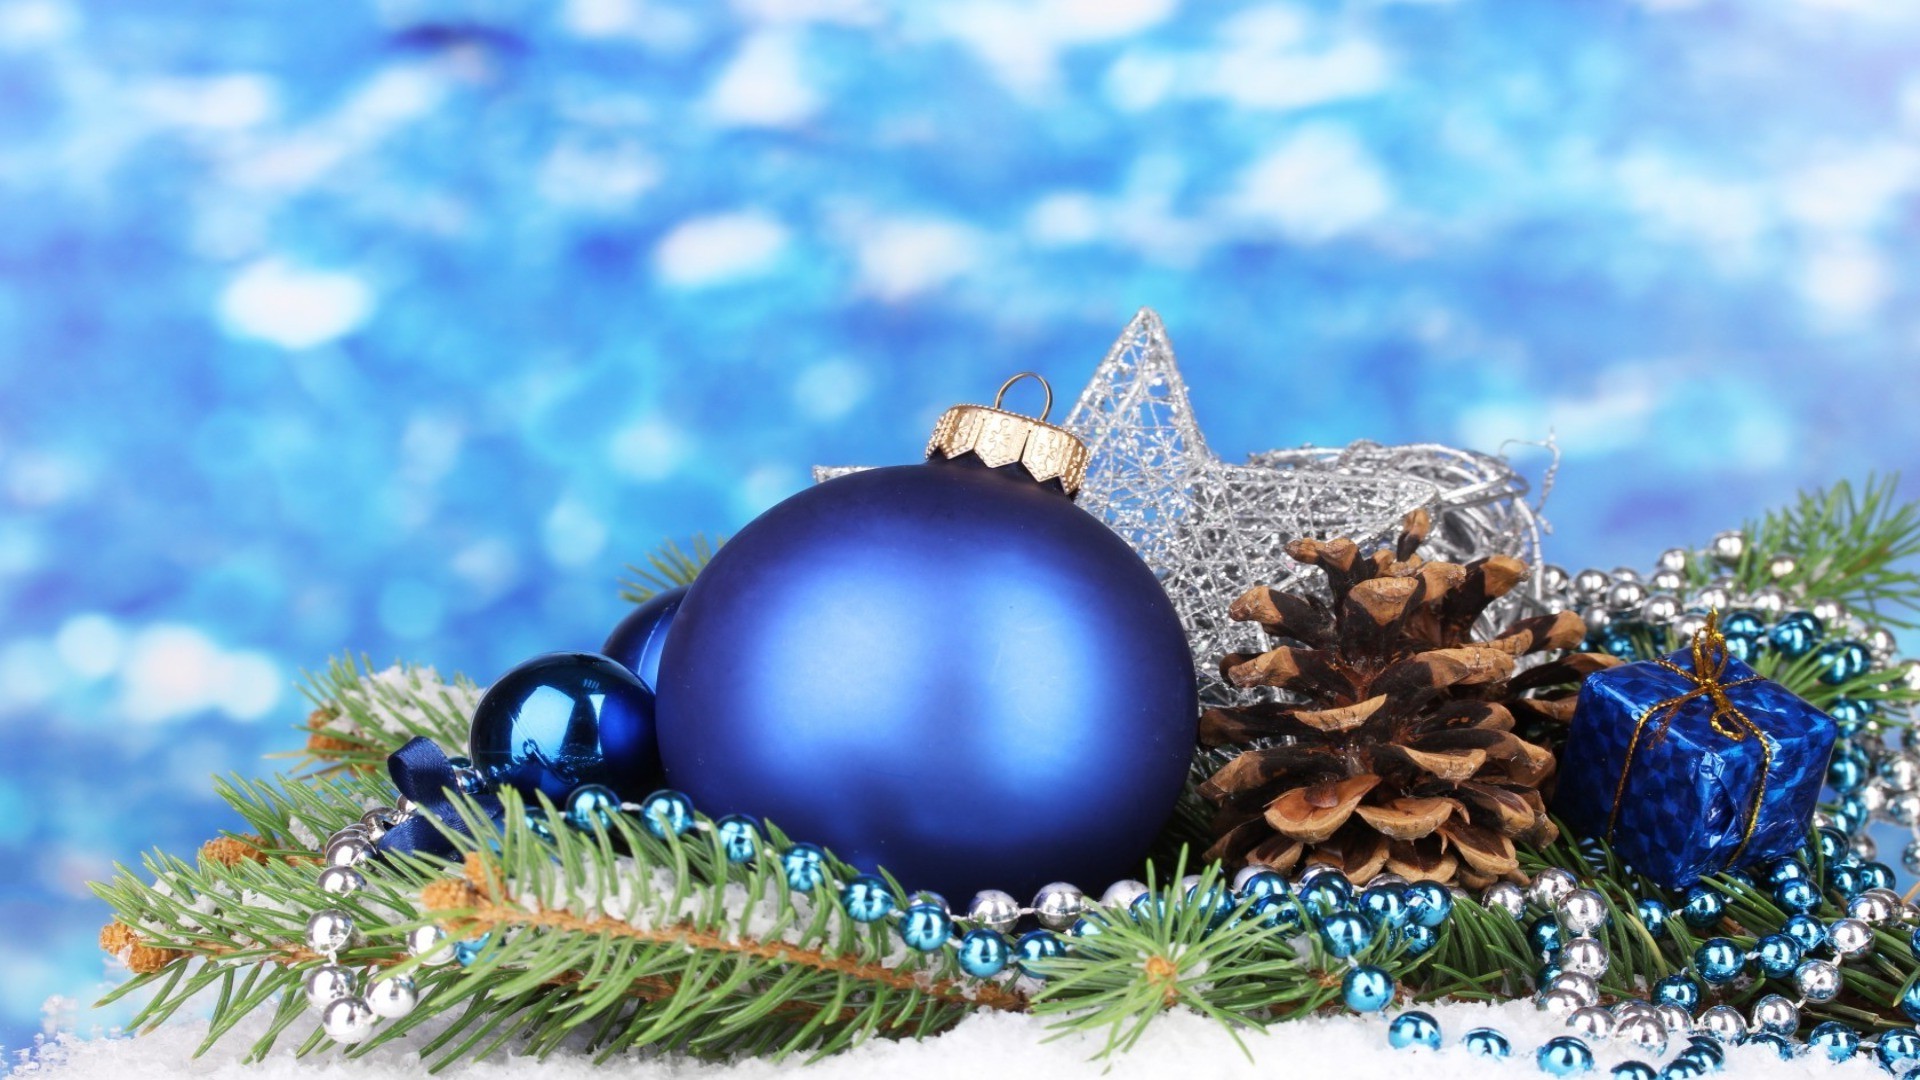 новый год зима рождество мяч украшения сосна светит пихта праздник браслет сезон сфера мерри традиционные витиеватый снег блестят дерево отпуск яркий